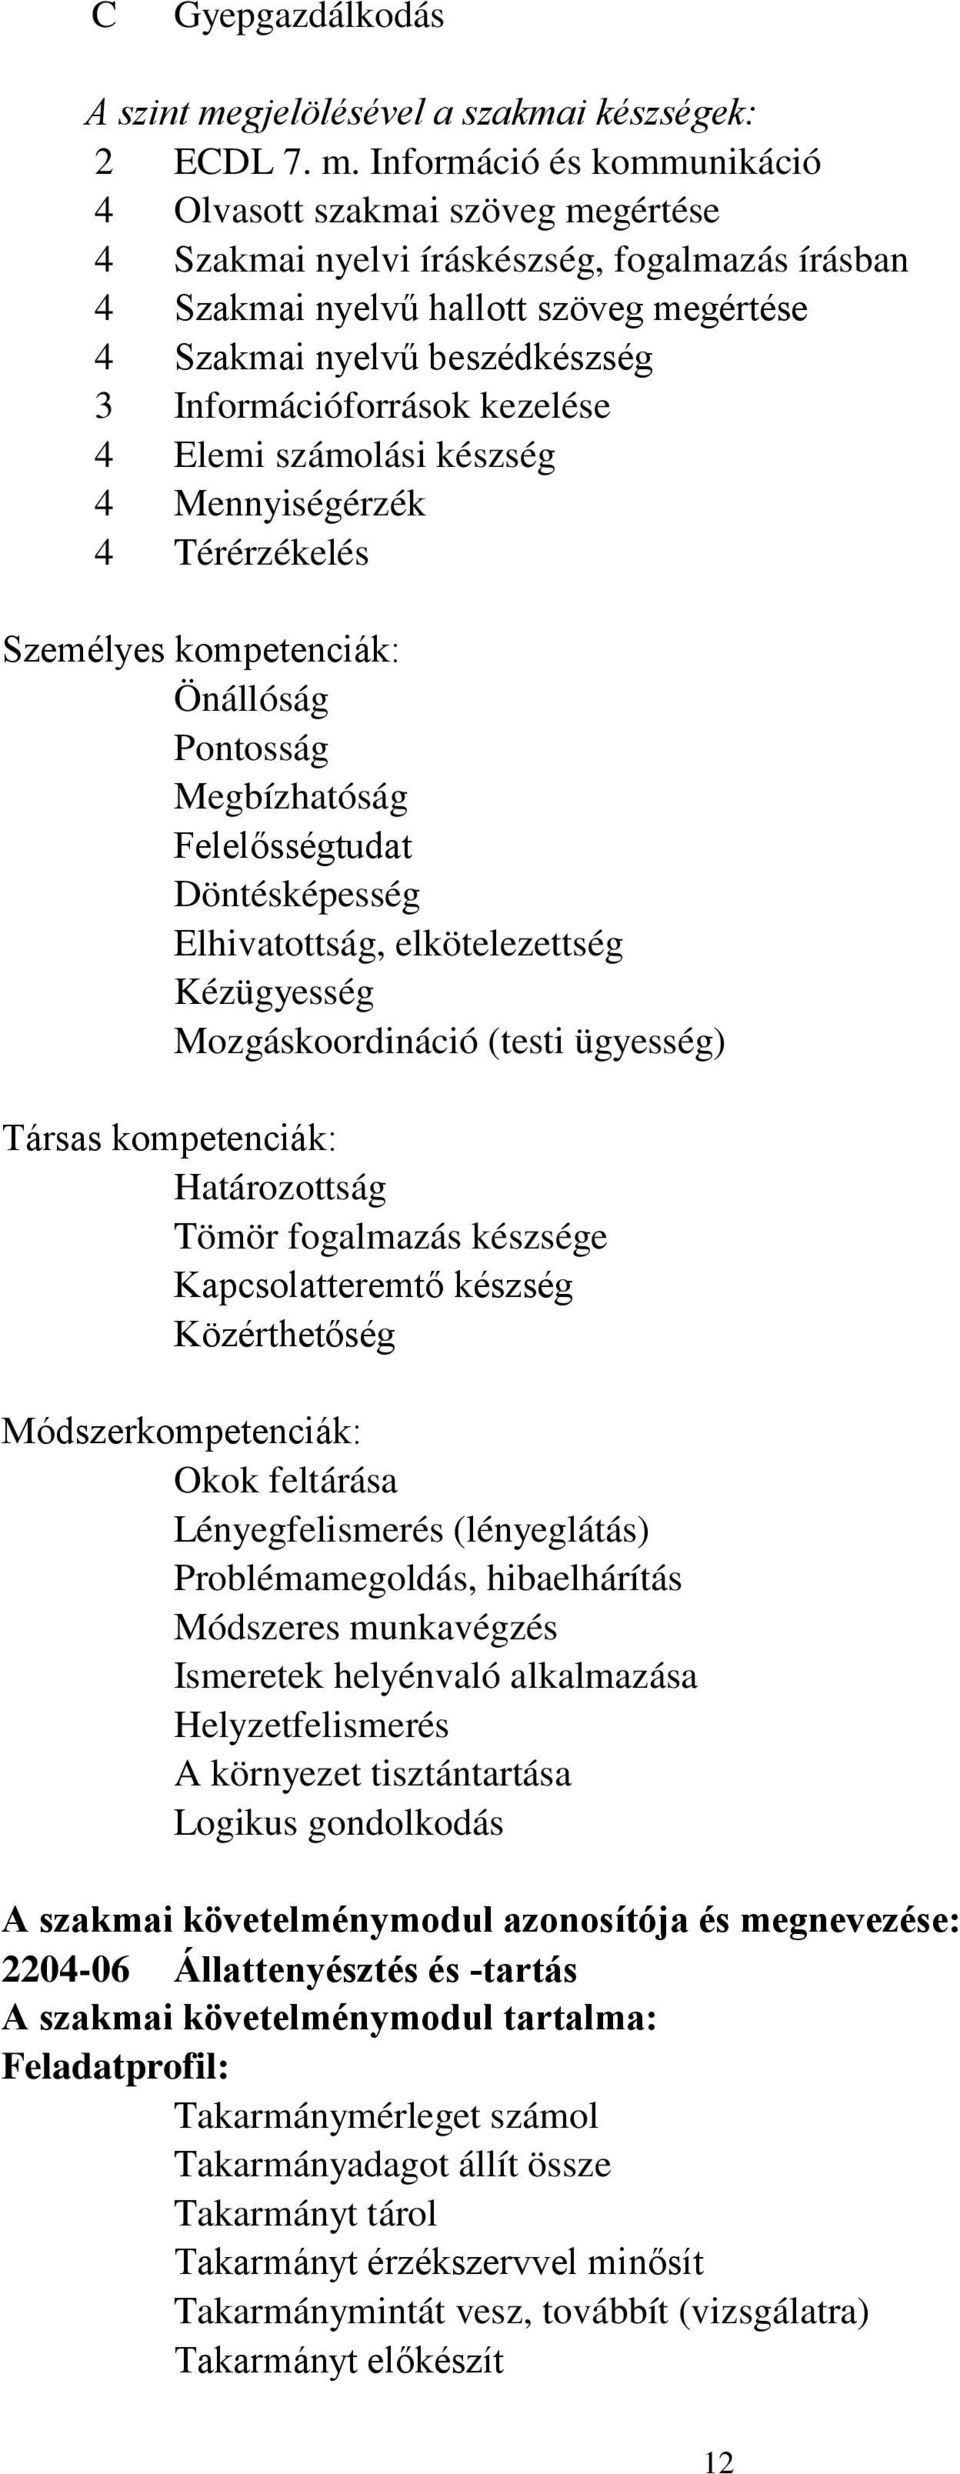 Információ és kommunikáció 4 Olvasott szakmai szöveg megértése 4 Szakmai nyelvi íráskészség, fogalmazás írásban 4 Szakmai nyelvű hallott szöveg megértése 4 Szakmai nyelvű beszédkészség 3